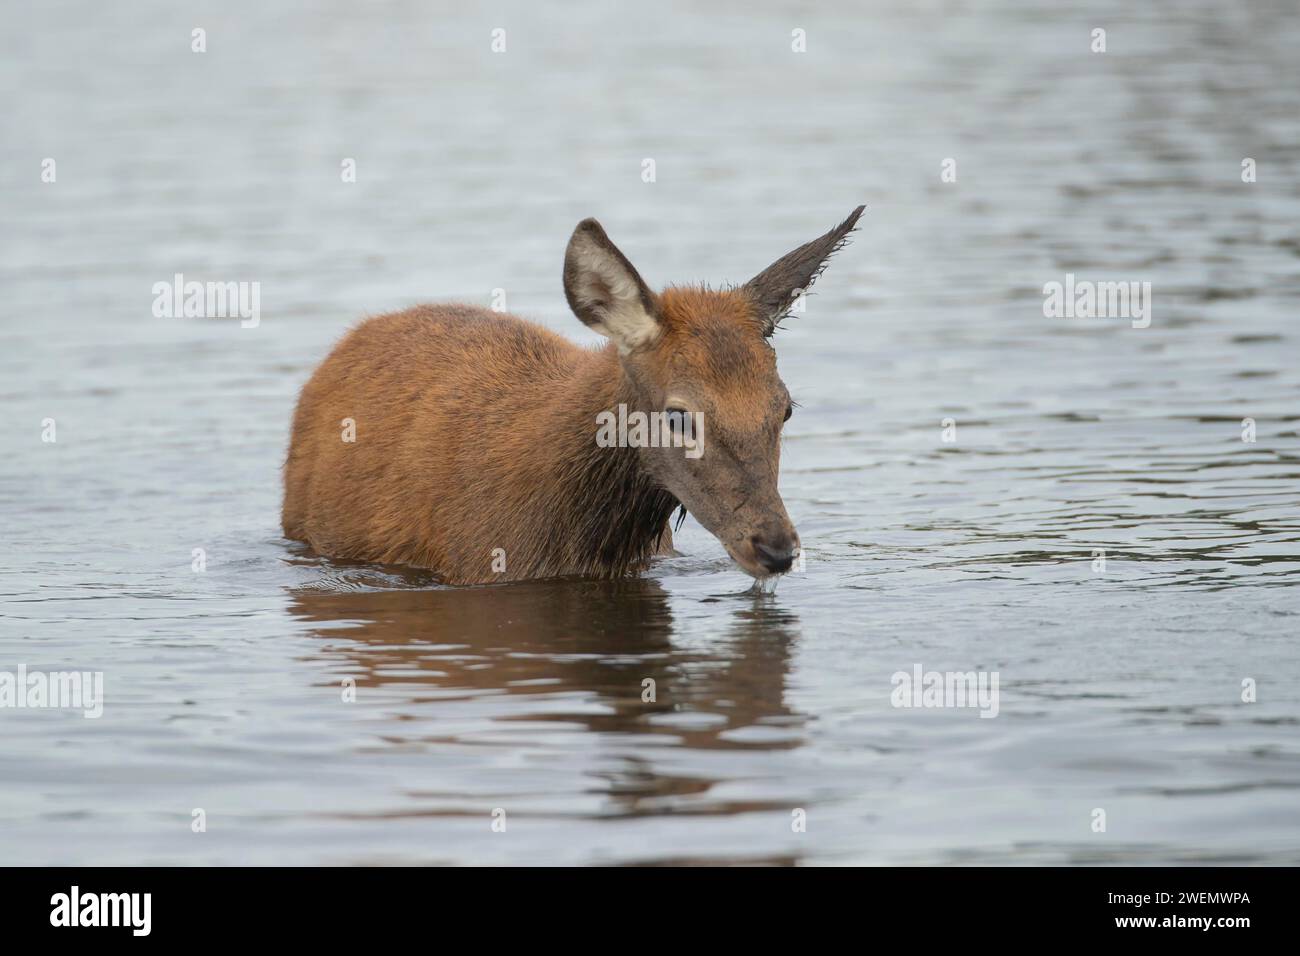 Le cerf-Rouge (Cervus elaphus) fauve en train de boire dans un lac, Surrey, Angleterre, Royaume-Uni Banque D'Images